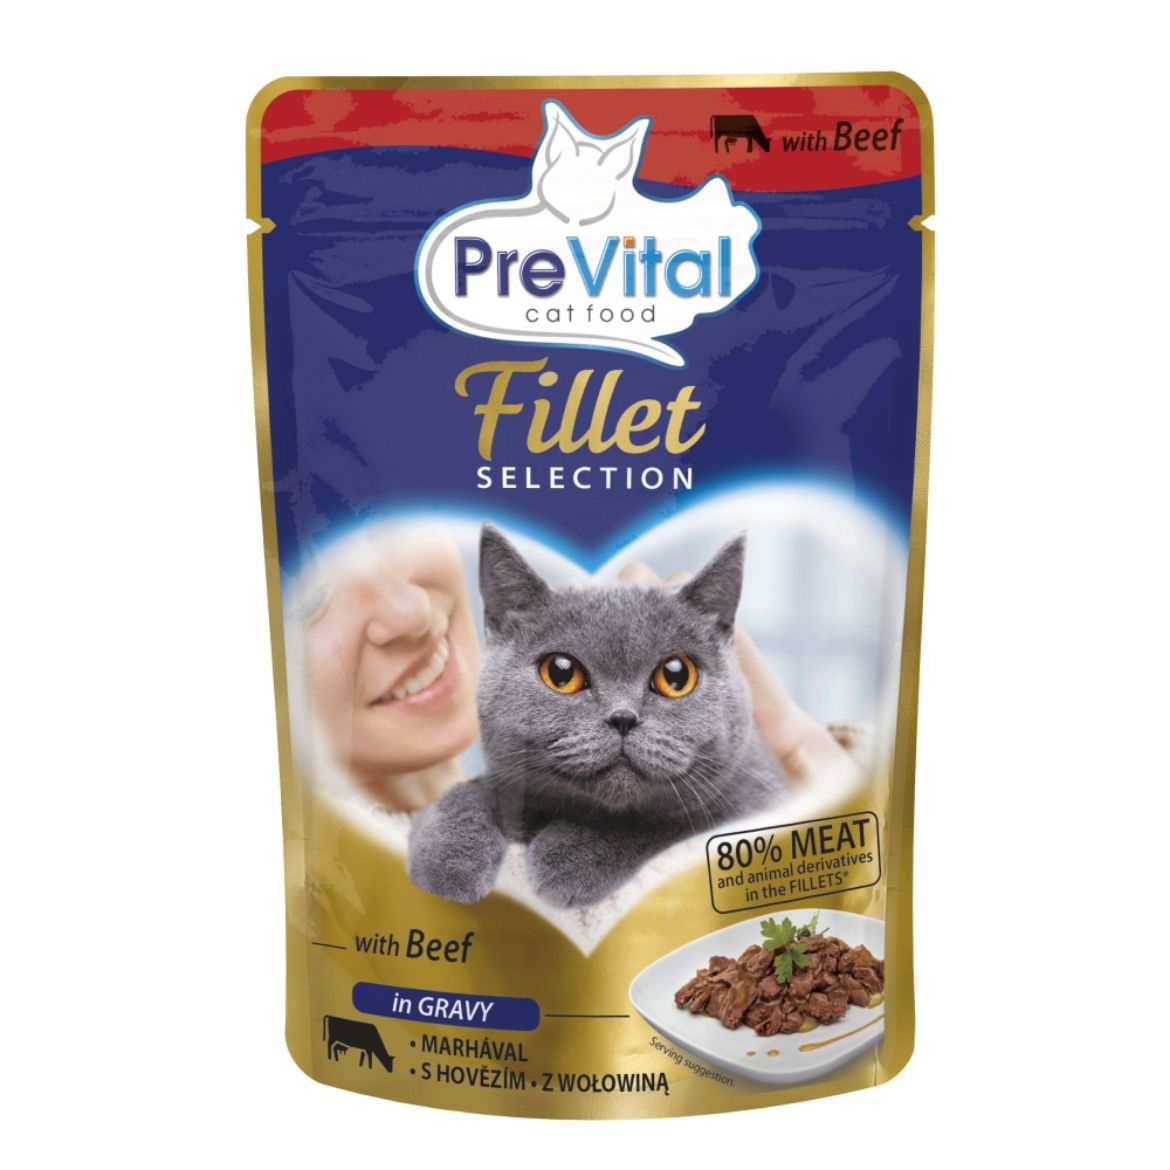 Obrázek z PreVital Fillet kočka hovězí, kapsa 85 g 